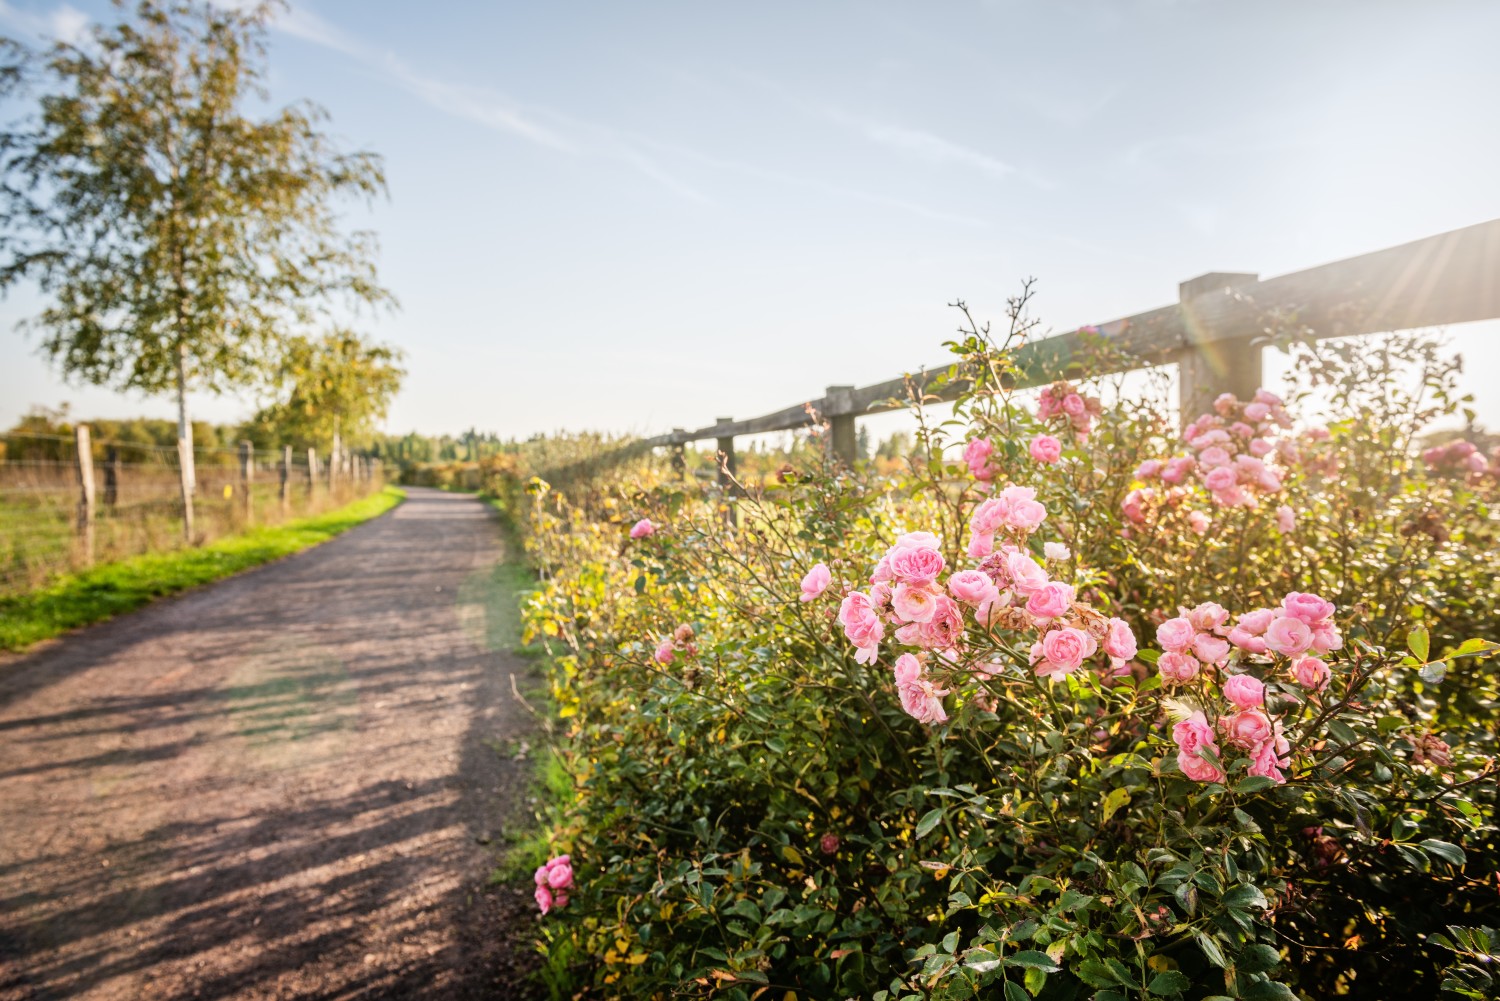 Auf der linken Seite des Bildes ein Kieselweg aus roten/bräunlichen Kieselsteine. Rechts davon ein Holzzaun, der den Weg von der dahinterliegenden Koppel abtrennt. Am Holzzaun blühlt ein Rosenstrauch mit vielen rosafarbenen Blüten. 